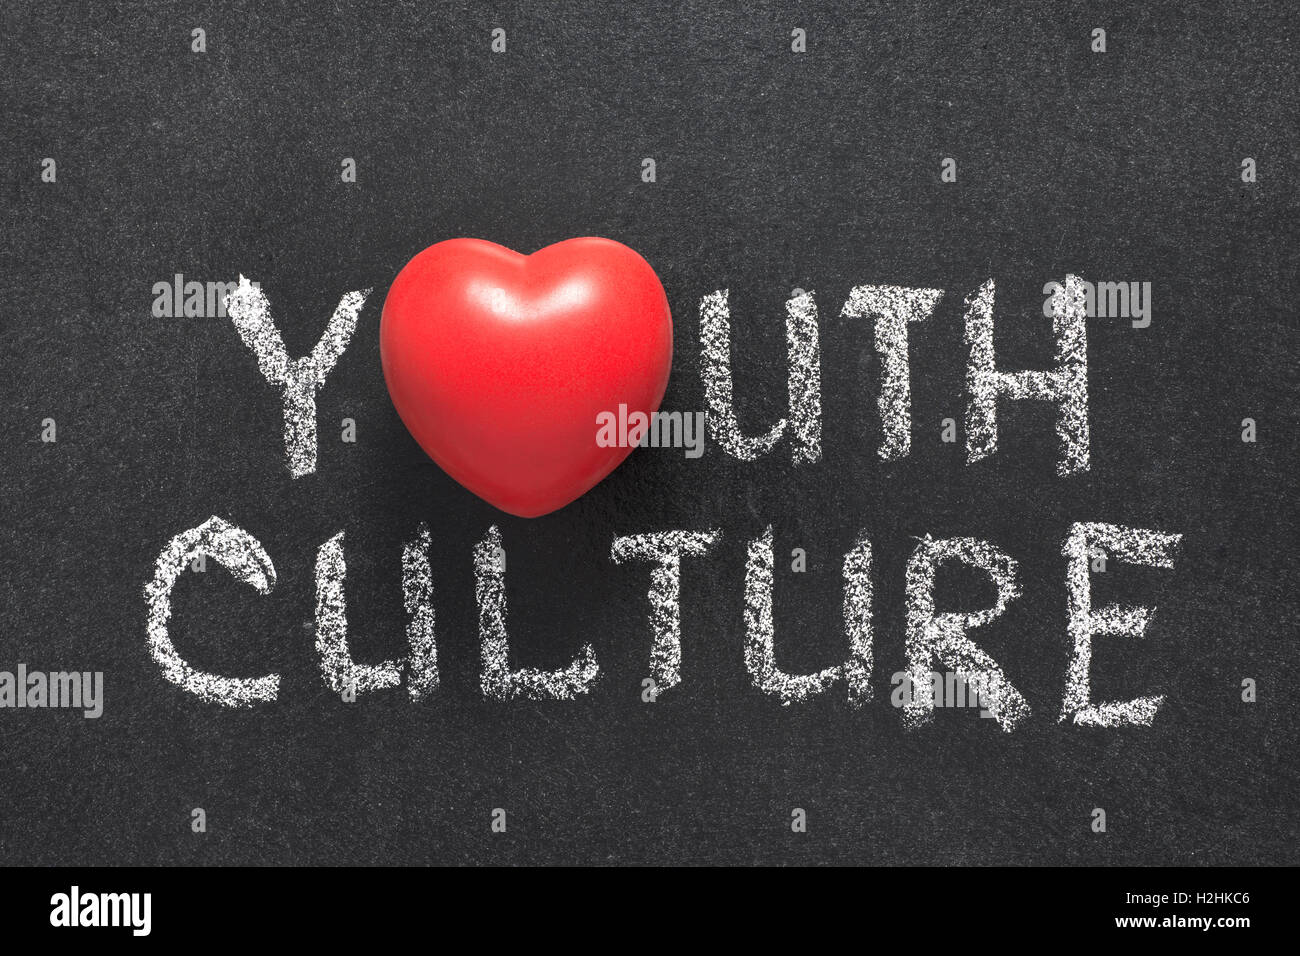 Jugend-Kultur-Satz handschriftlich auf Tafel mit Herzsymbol statt O Stockfoto